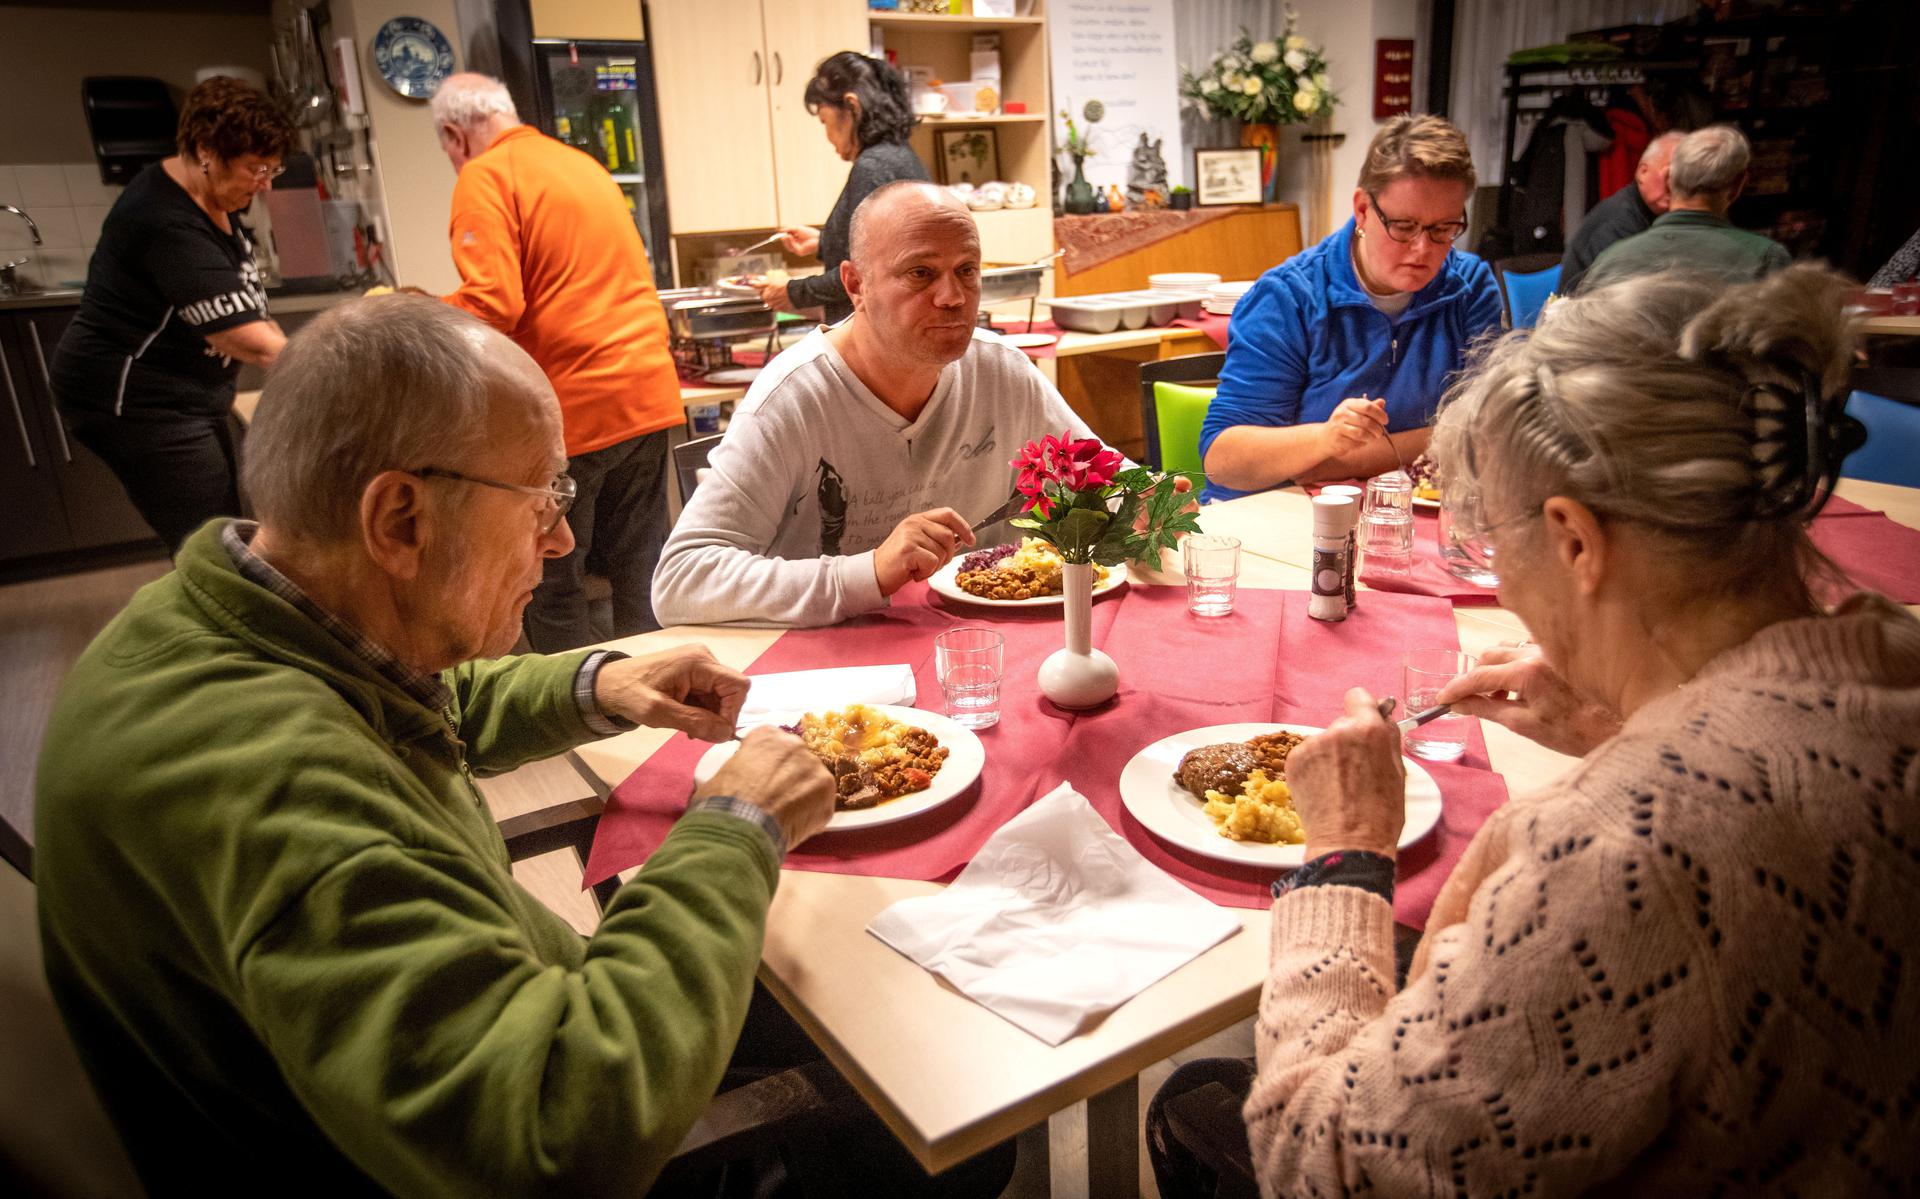 Gedurende de komende wintermaanden (november, december, januari en februari) kunnen inwoners van Gasselternijveen wekelijks tegen een kleine vergoeding een warme maaltijd krijgen. 